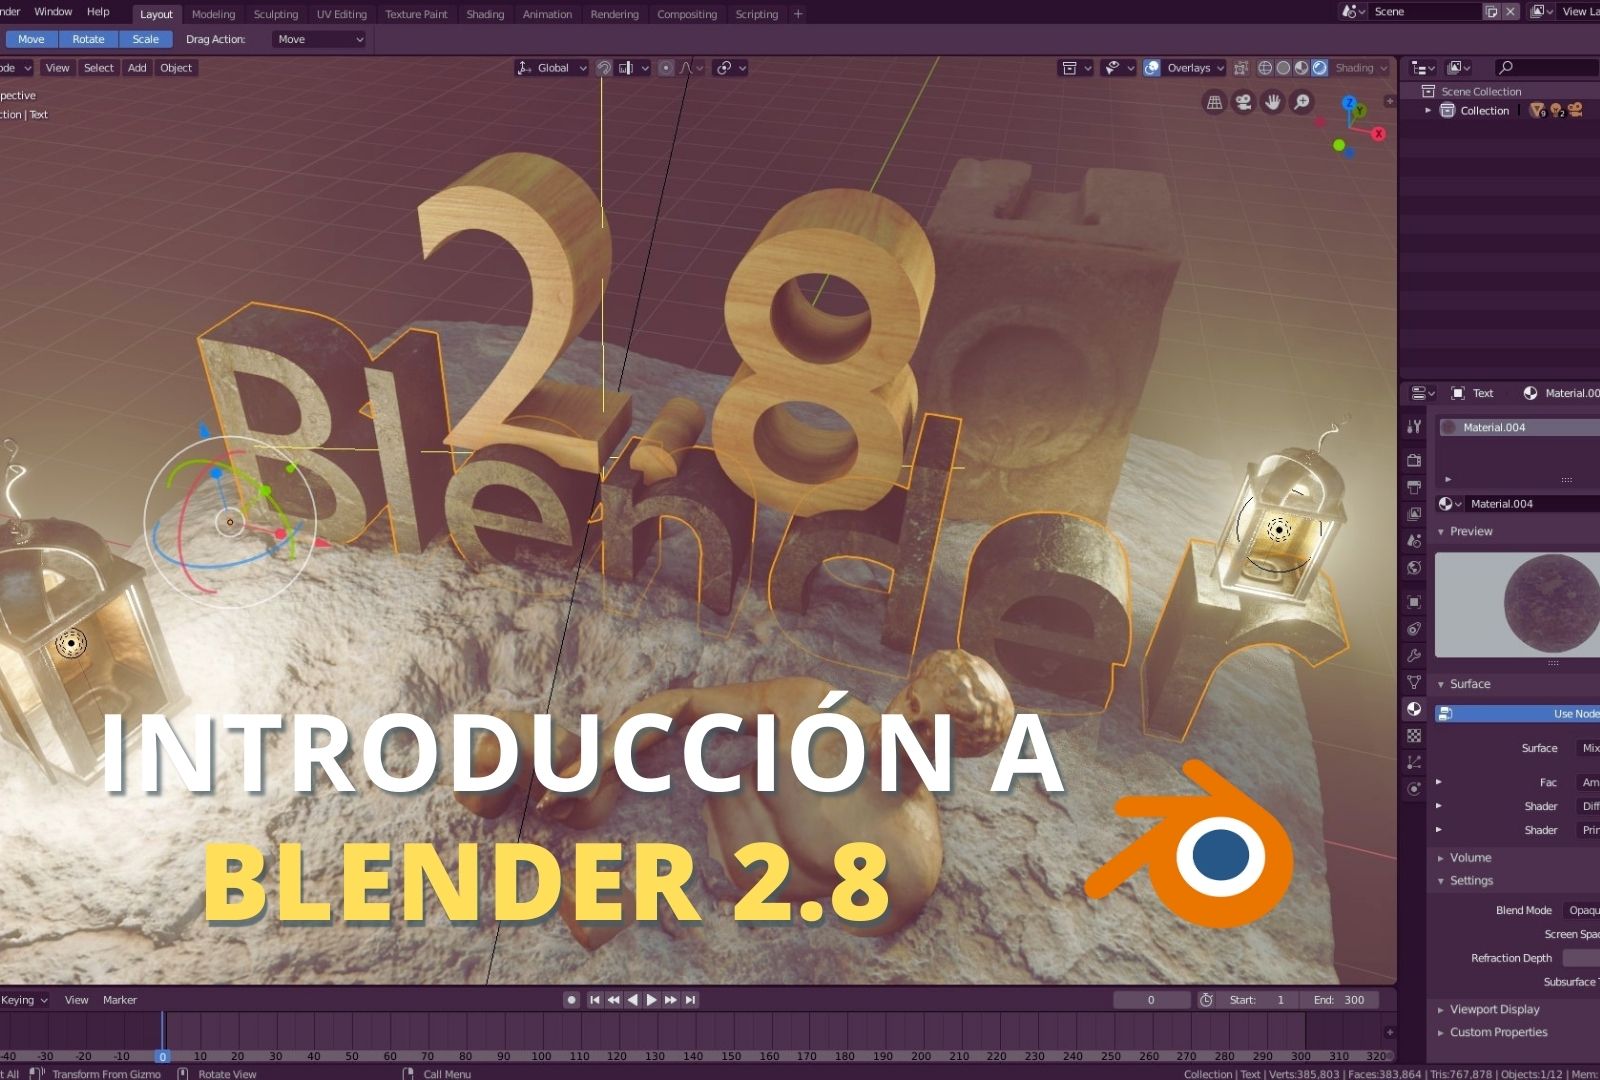 Introducción a Blender 2.80 Beta. ¡Descubre todas sus nuevas herramientas!